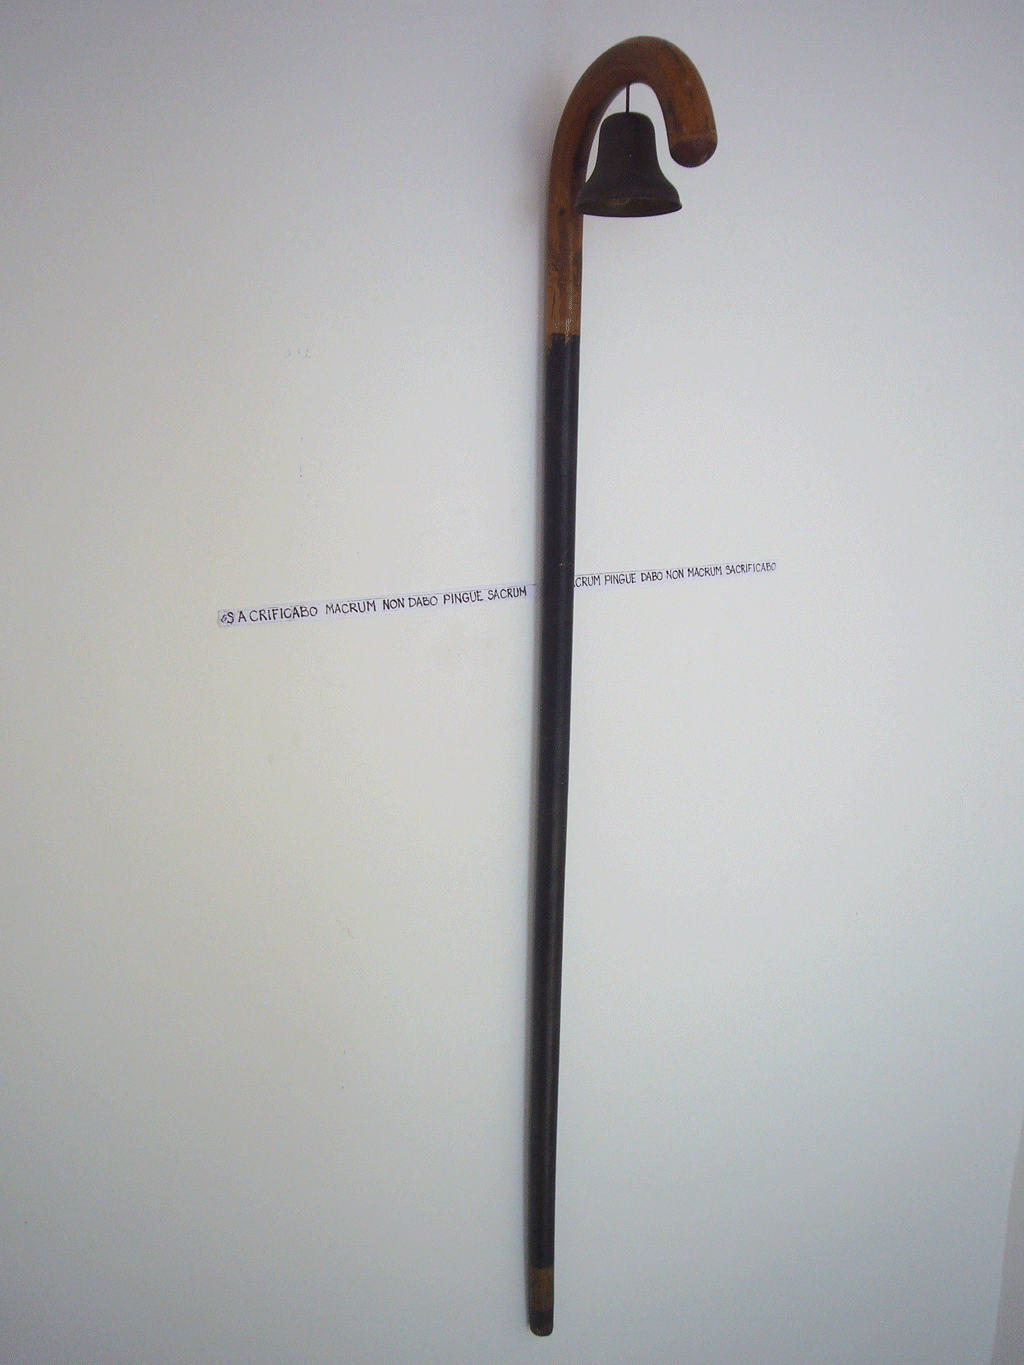 Rebus #1 / Cane and a bell / Kain und Abel (nicht verfügbar) - Spazierstock, Glocke, Text  - 1998 - 91 x 50 x 15,5 cm 